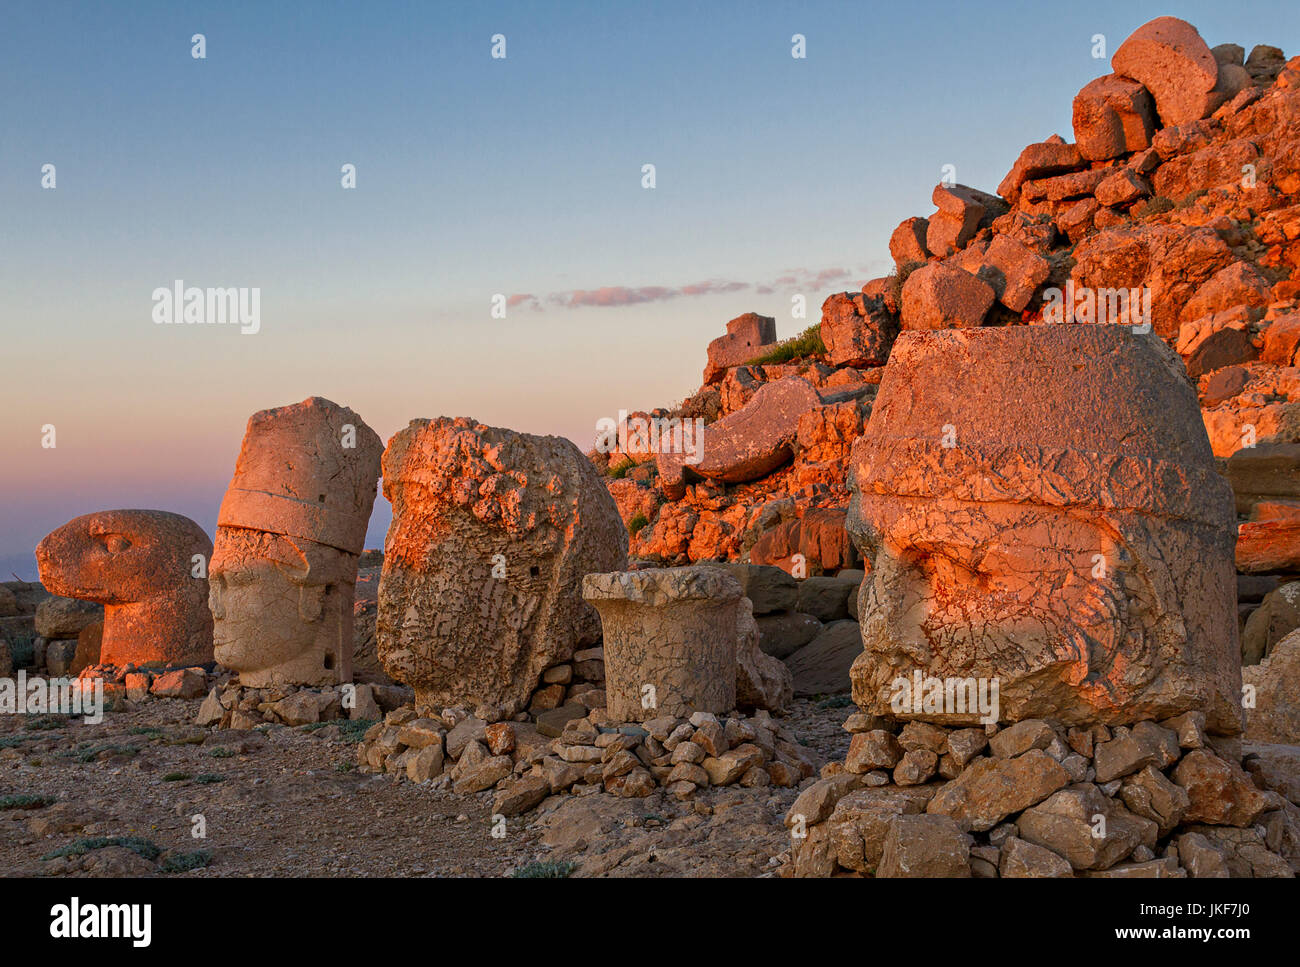 Sanctuaire de montagne Nemrut, ruines de la civilisation de Commagène, site de la Turquie. Banque D'Images